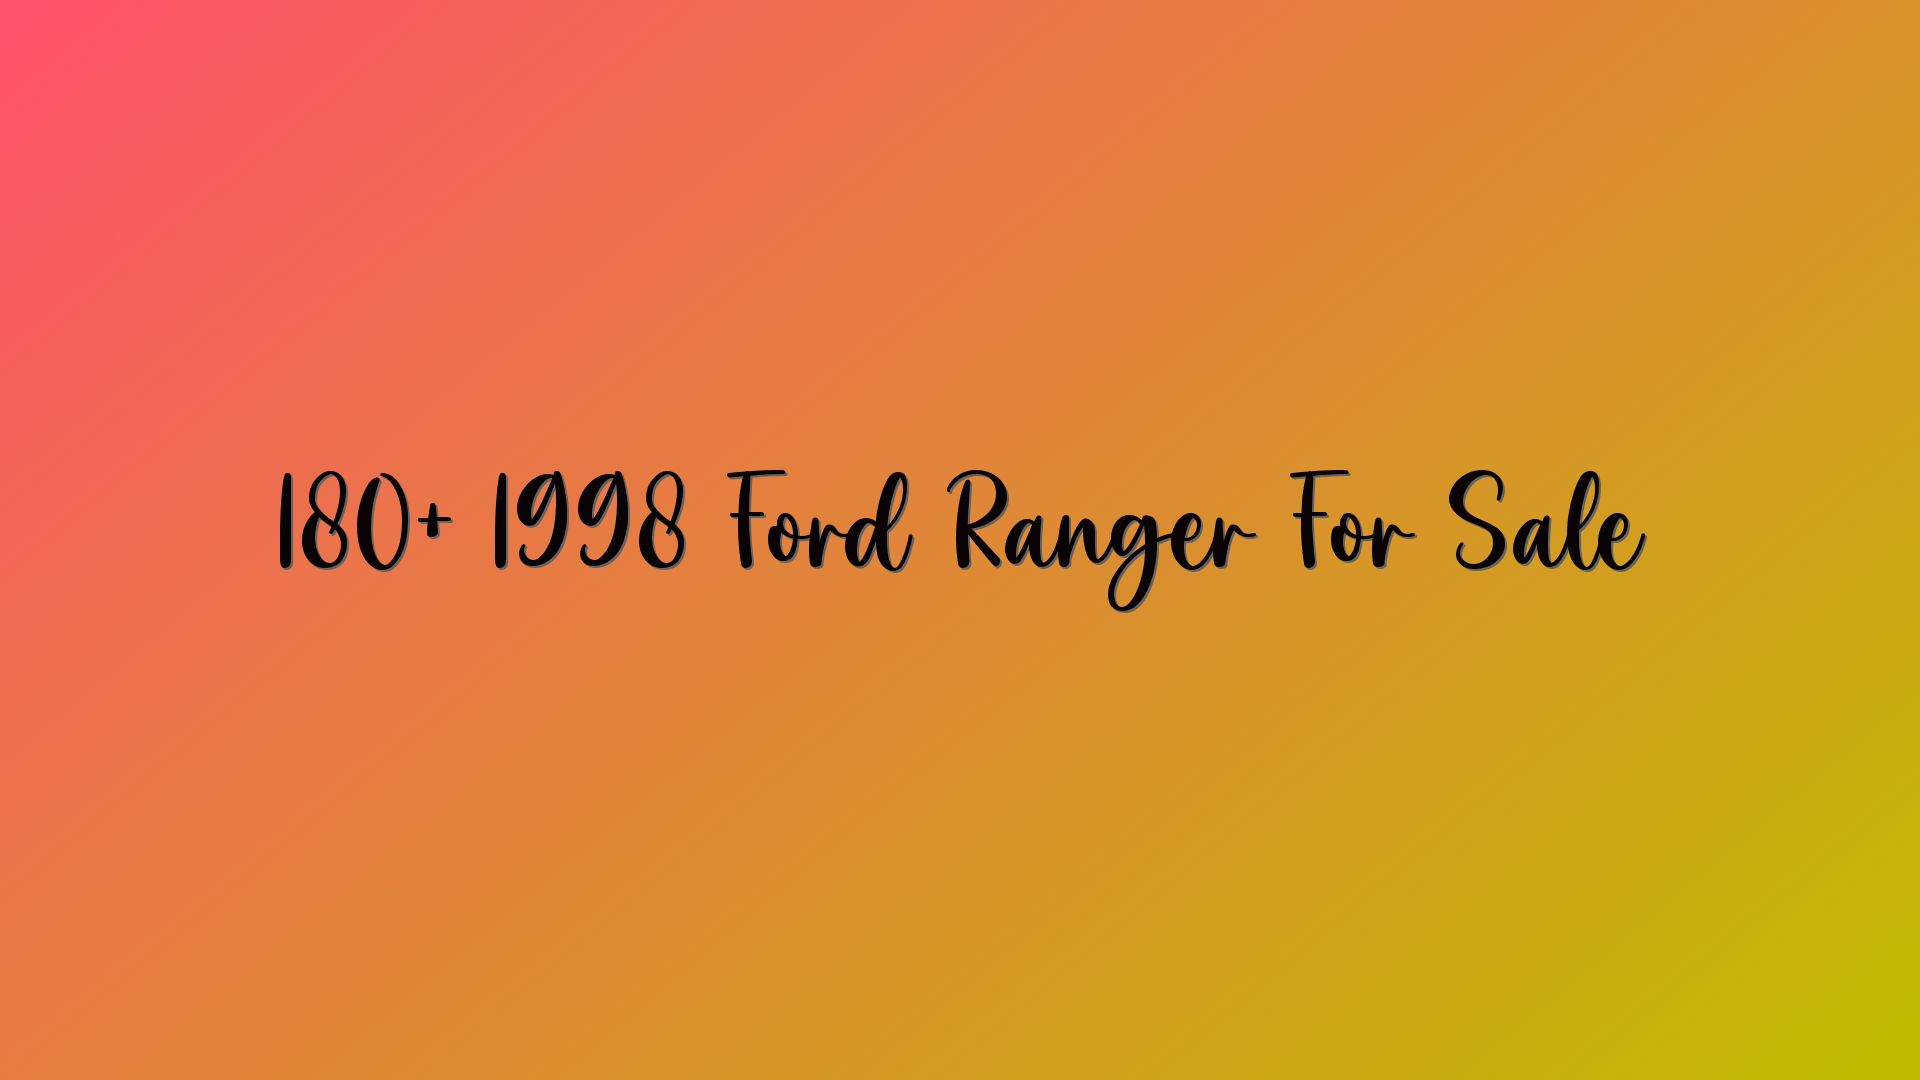 180+ 1998 Ford Ranger For Sale